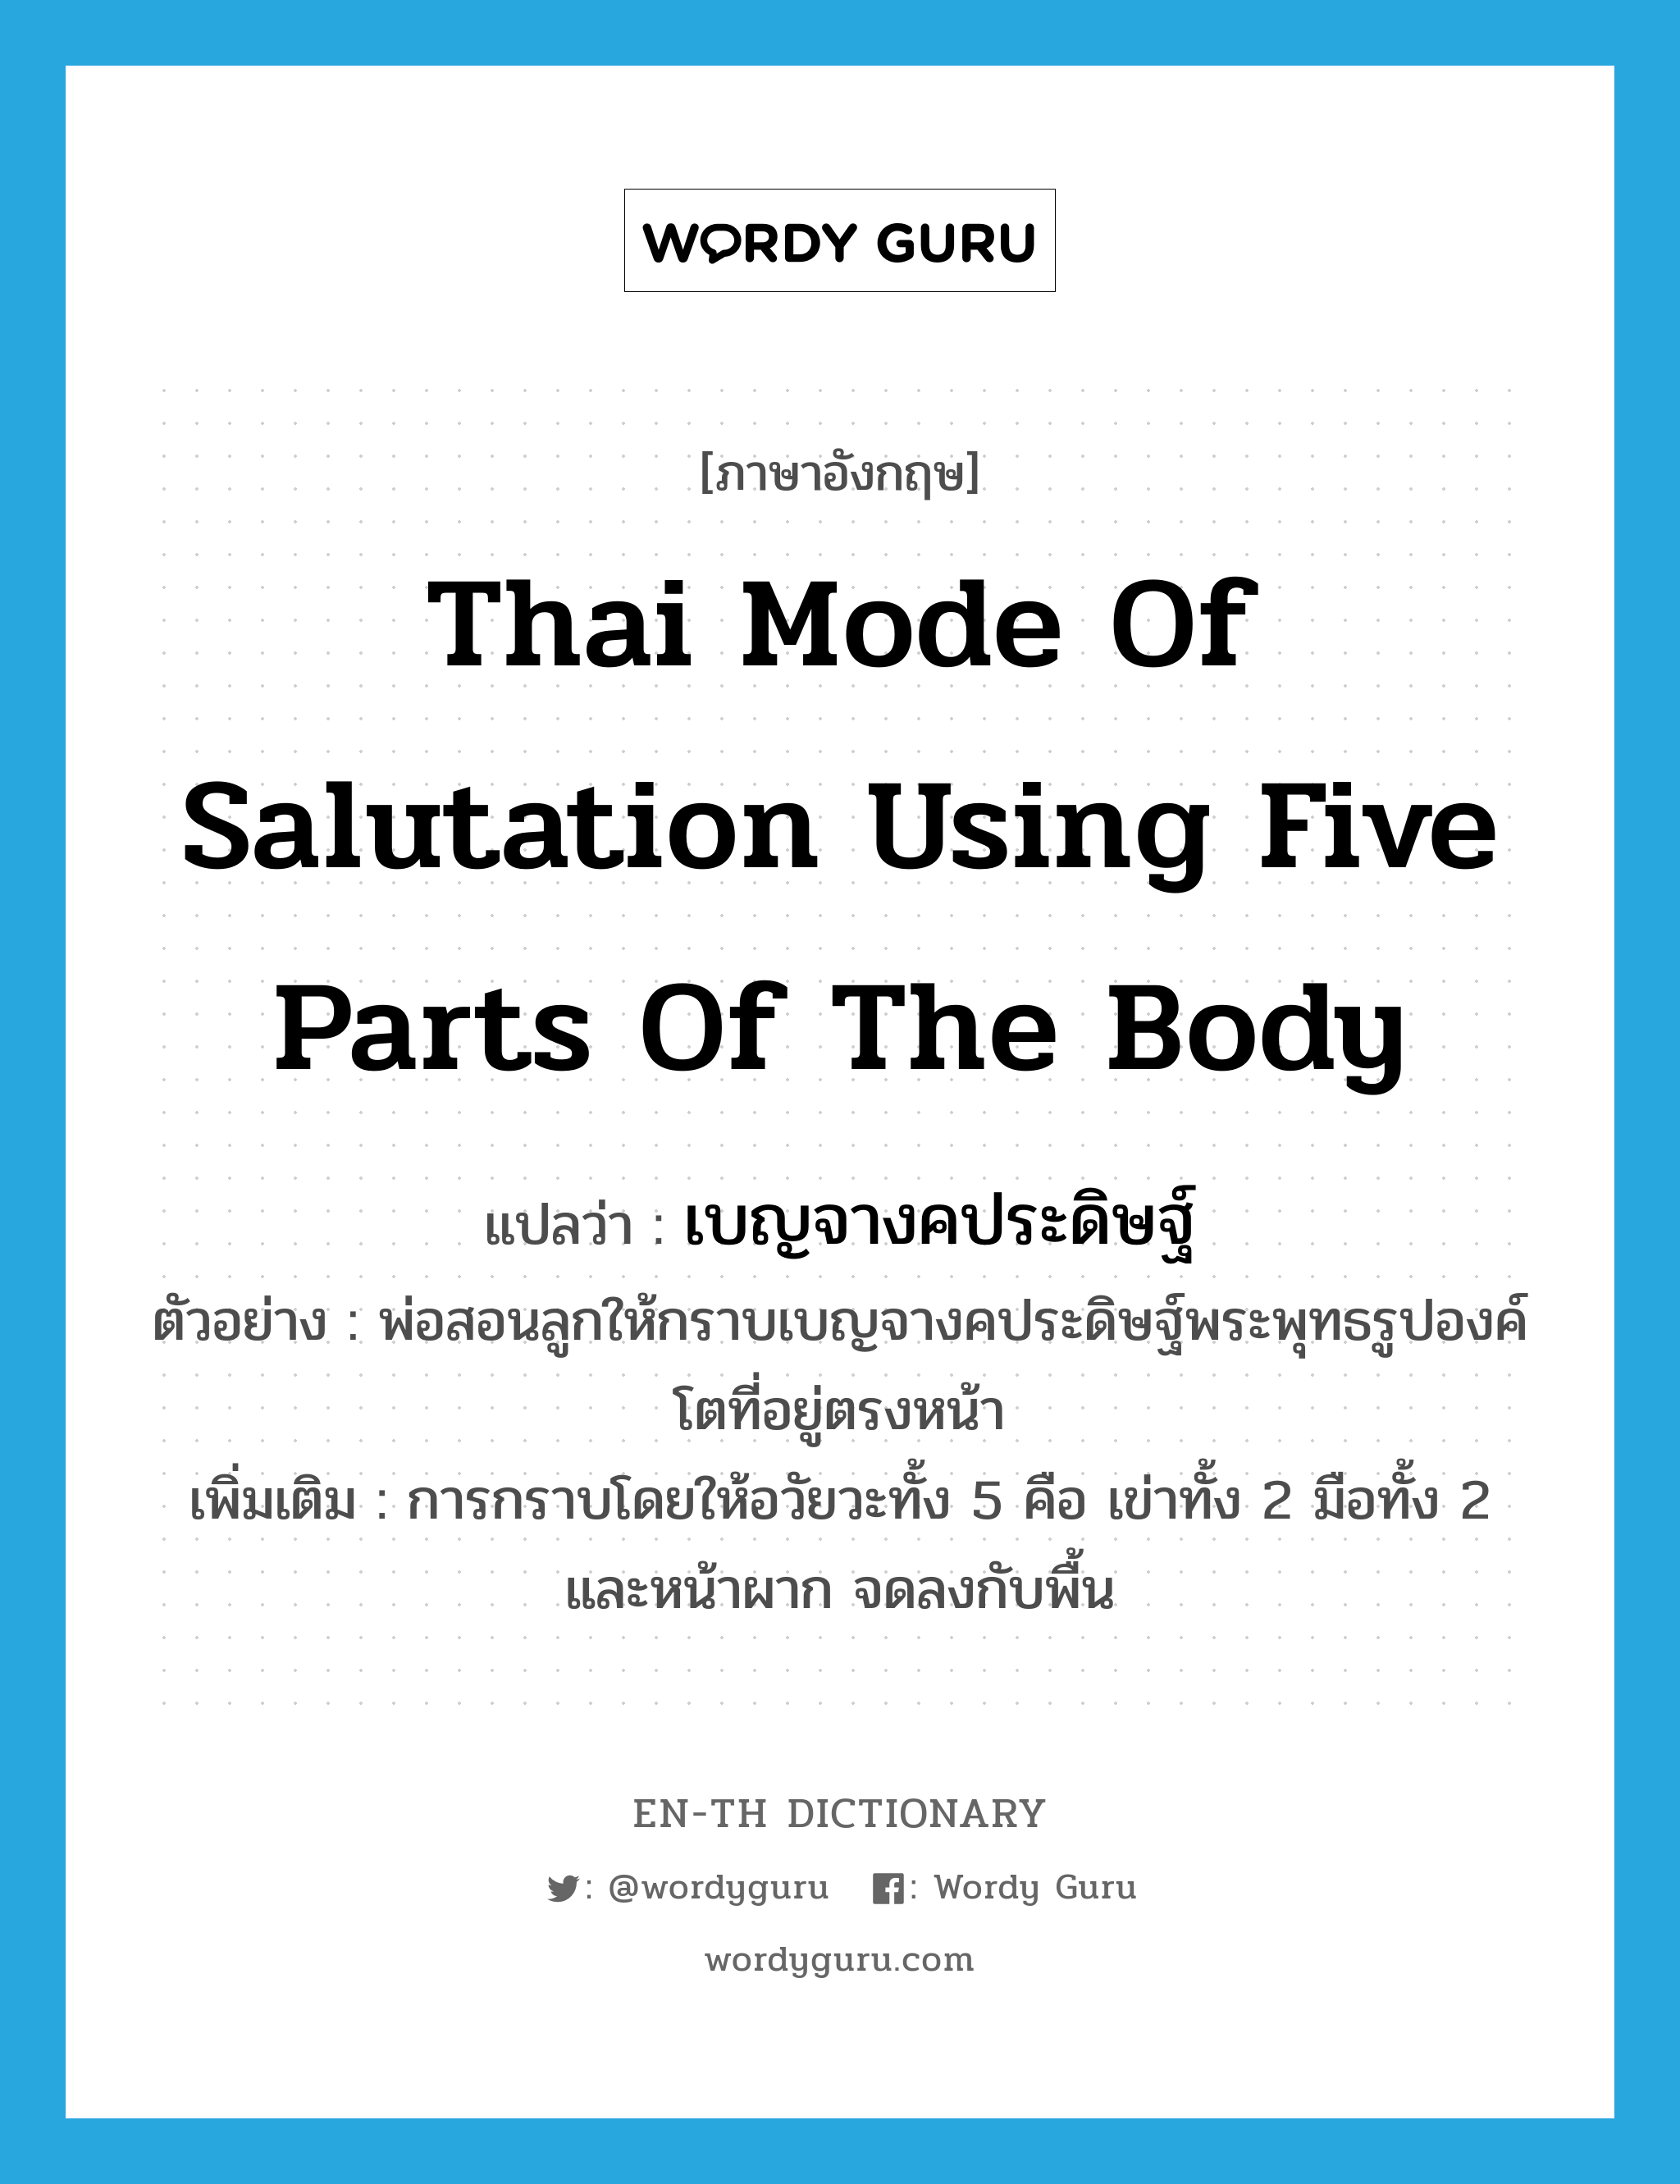 Thai mode of salutation using five parts of the body แปลว่า?, คำศัพท์ภาษาอังกฤษ Thai mode of salutation using five parts of the body แปลว่า เบญจางคประดิษฐ์ ประเภท N ตัวอย่าง พ่อสอนลูกให้กราบเบญจางคประดิษฐ์พระพุทธรูปองค์โตที่อยู่ตรงหน้า เพิ่มเติม การกราบโดยให้อวัยวะทั้ง 5 คือ เข่าทั้ง 2 มือทั้ง 2 และหน้าผาก จดลงกับพื้น หมวด N